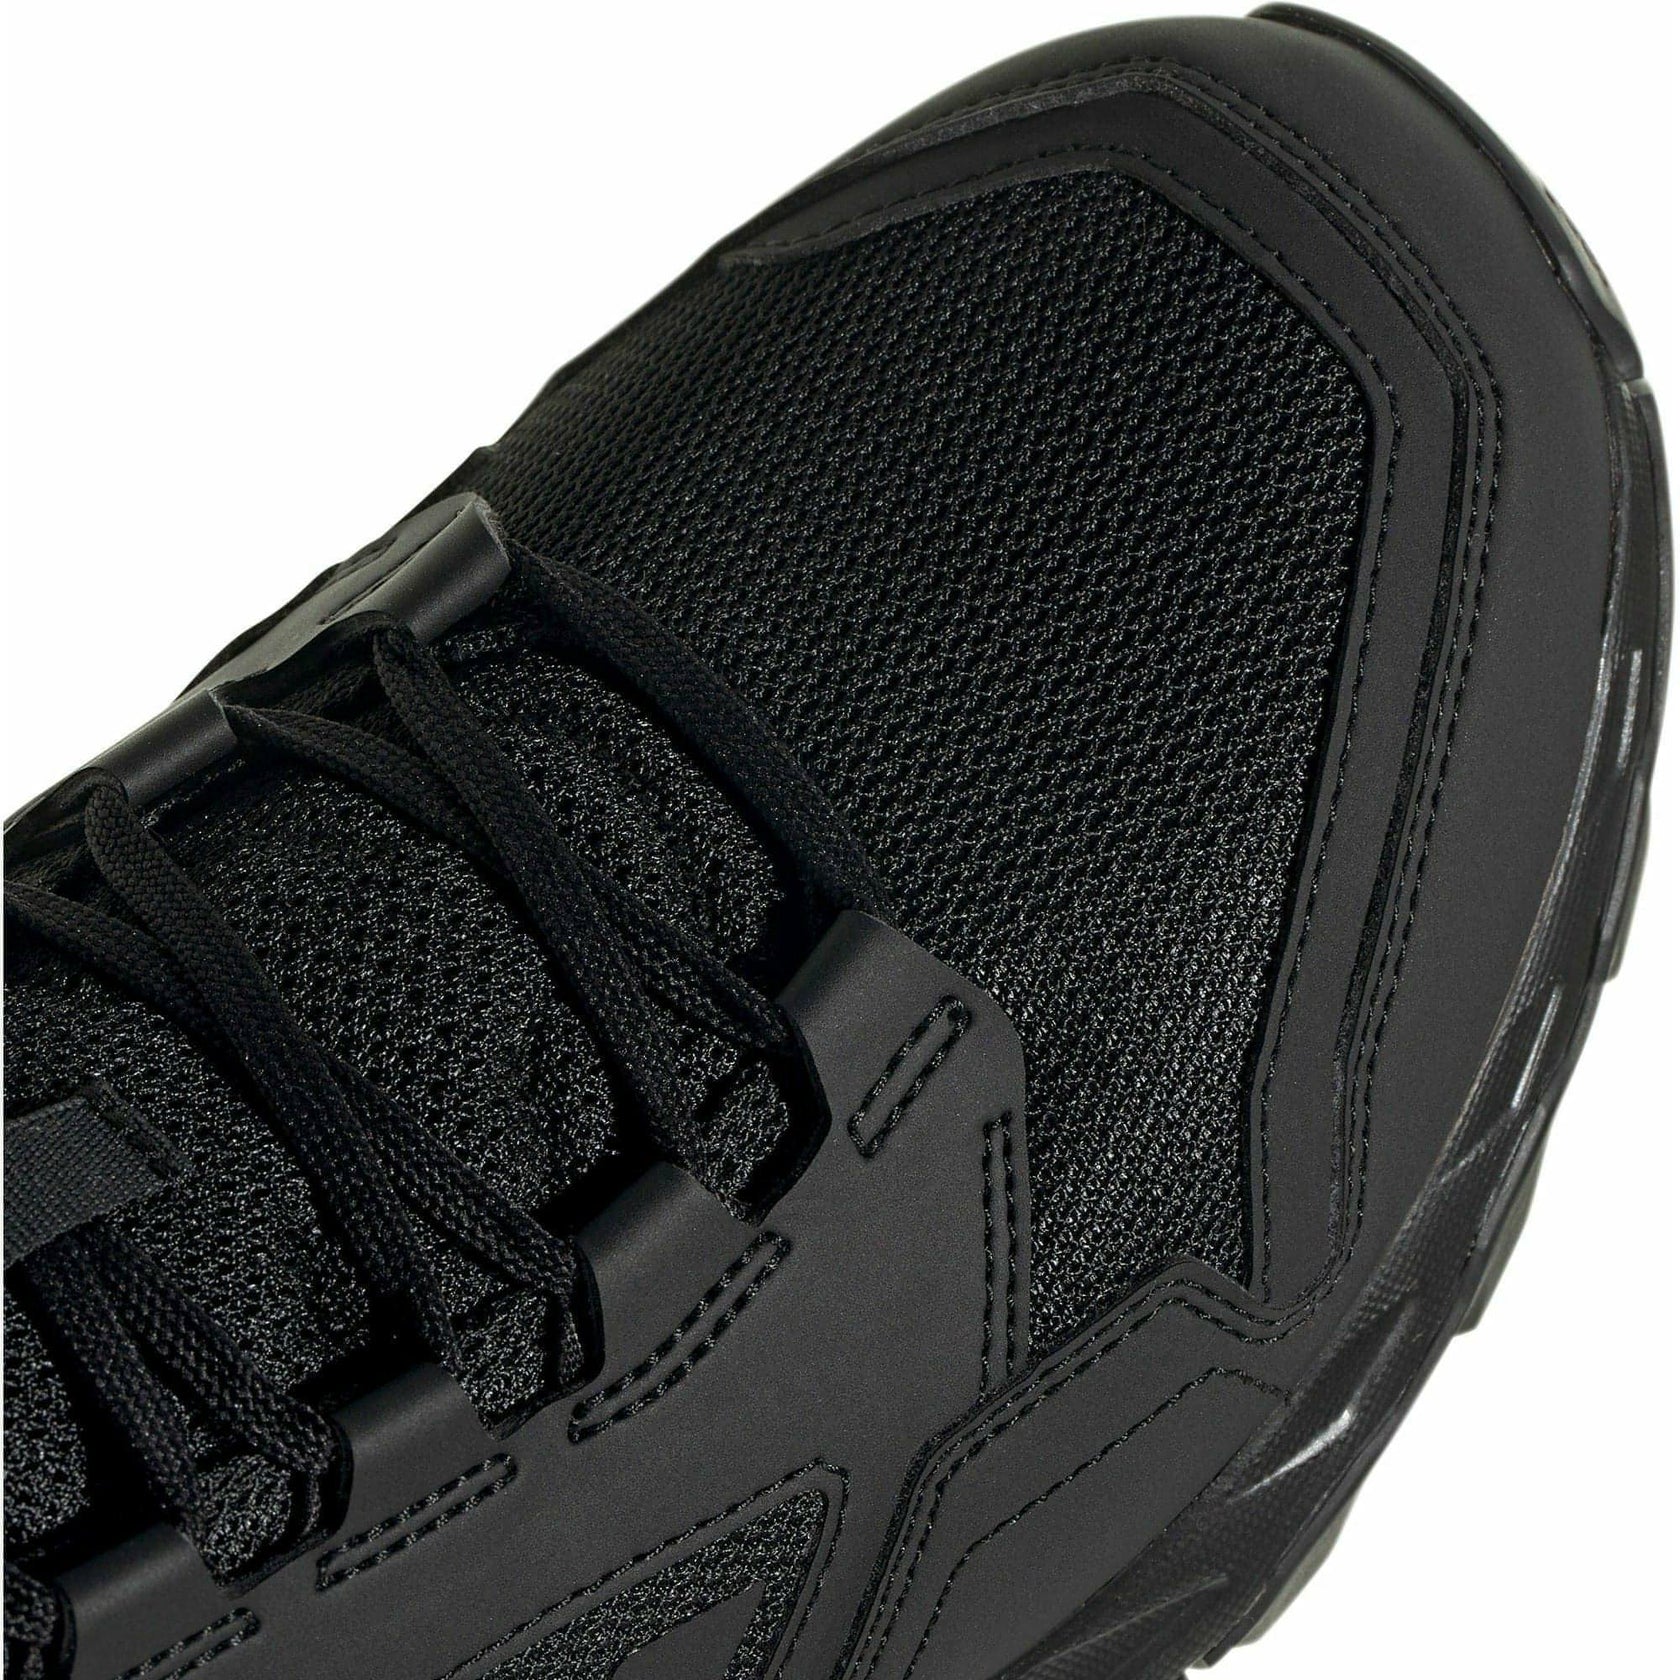 adidas Tracerocker 2 Mens Trail Running Shoes - Black – Start Fitness